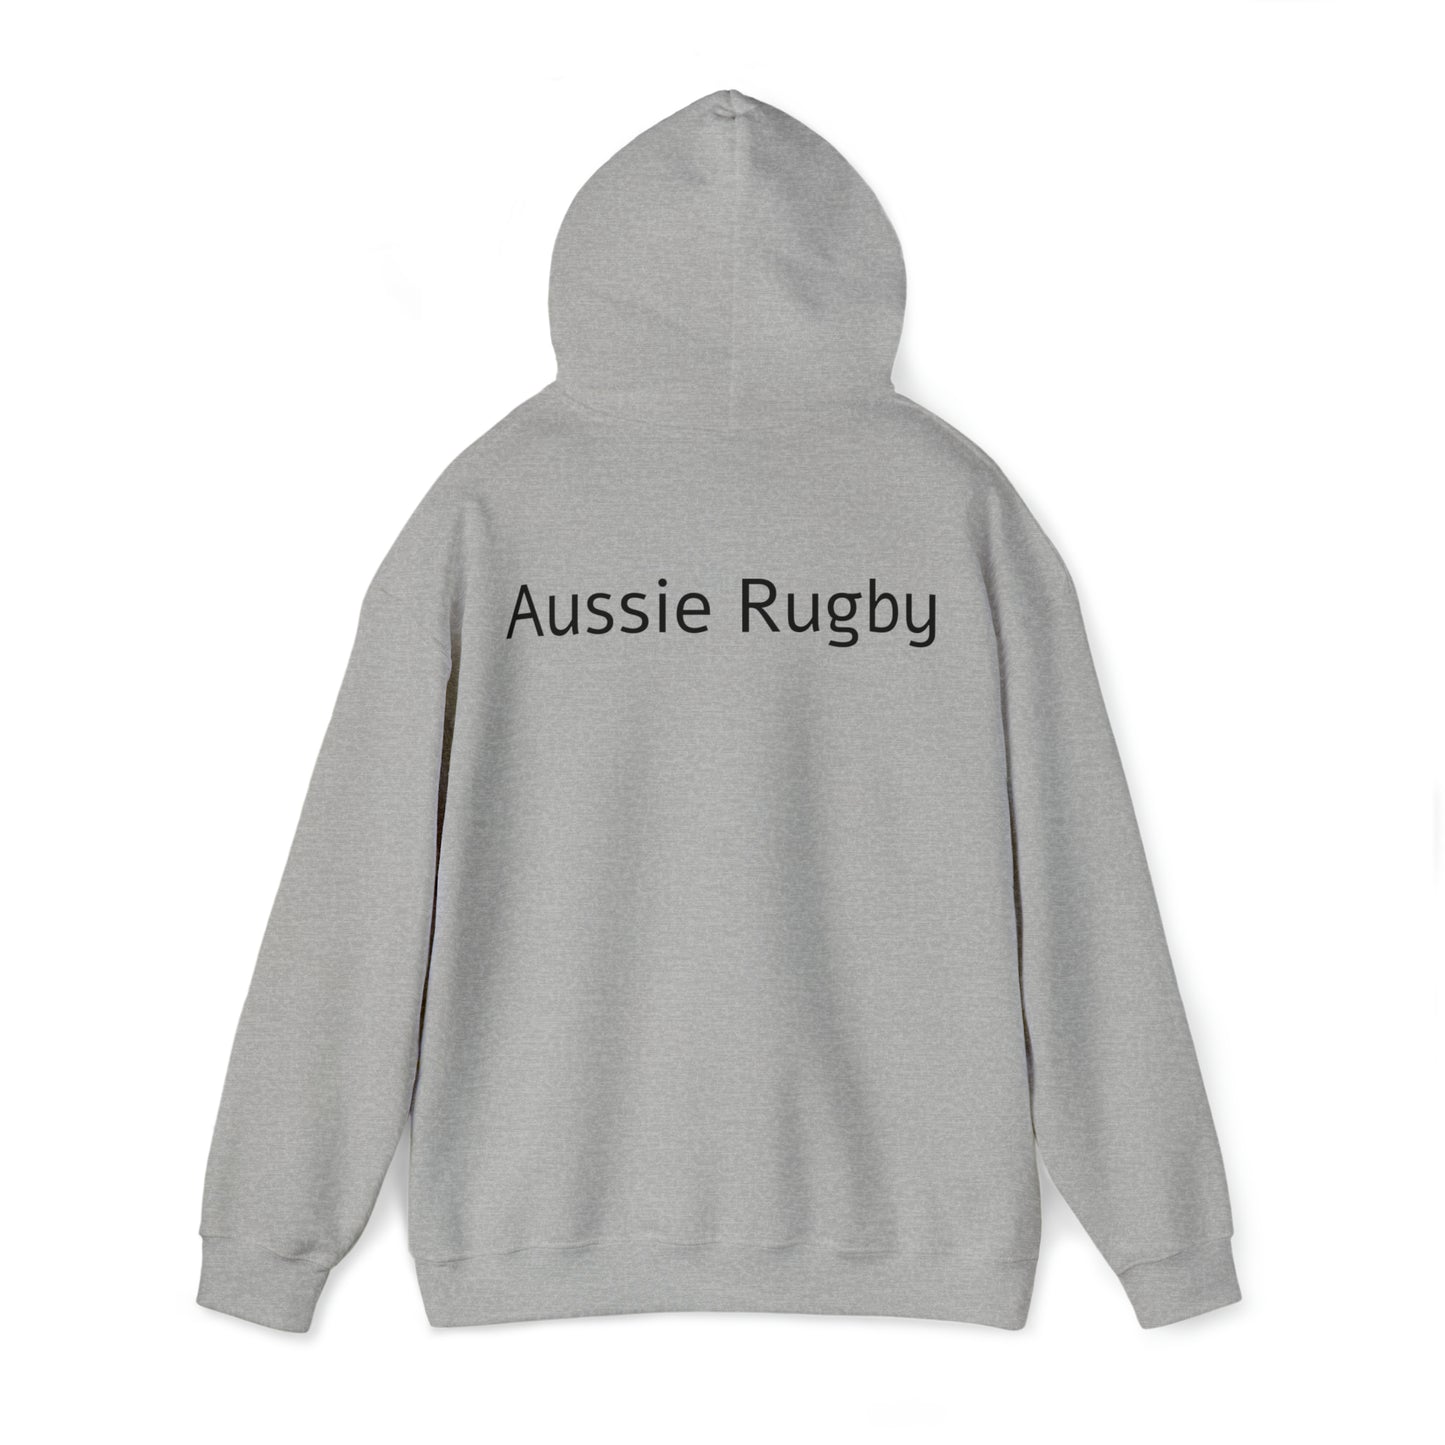 Aussie Aussie Aussie - light hoodies